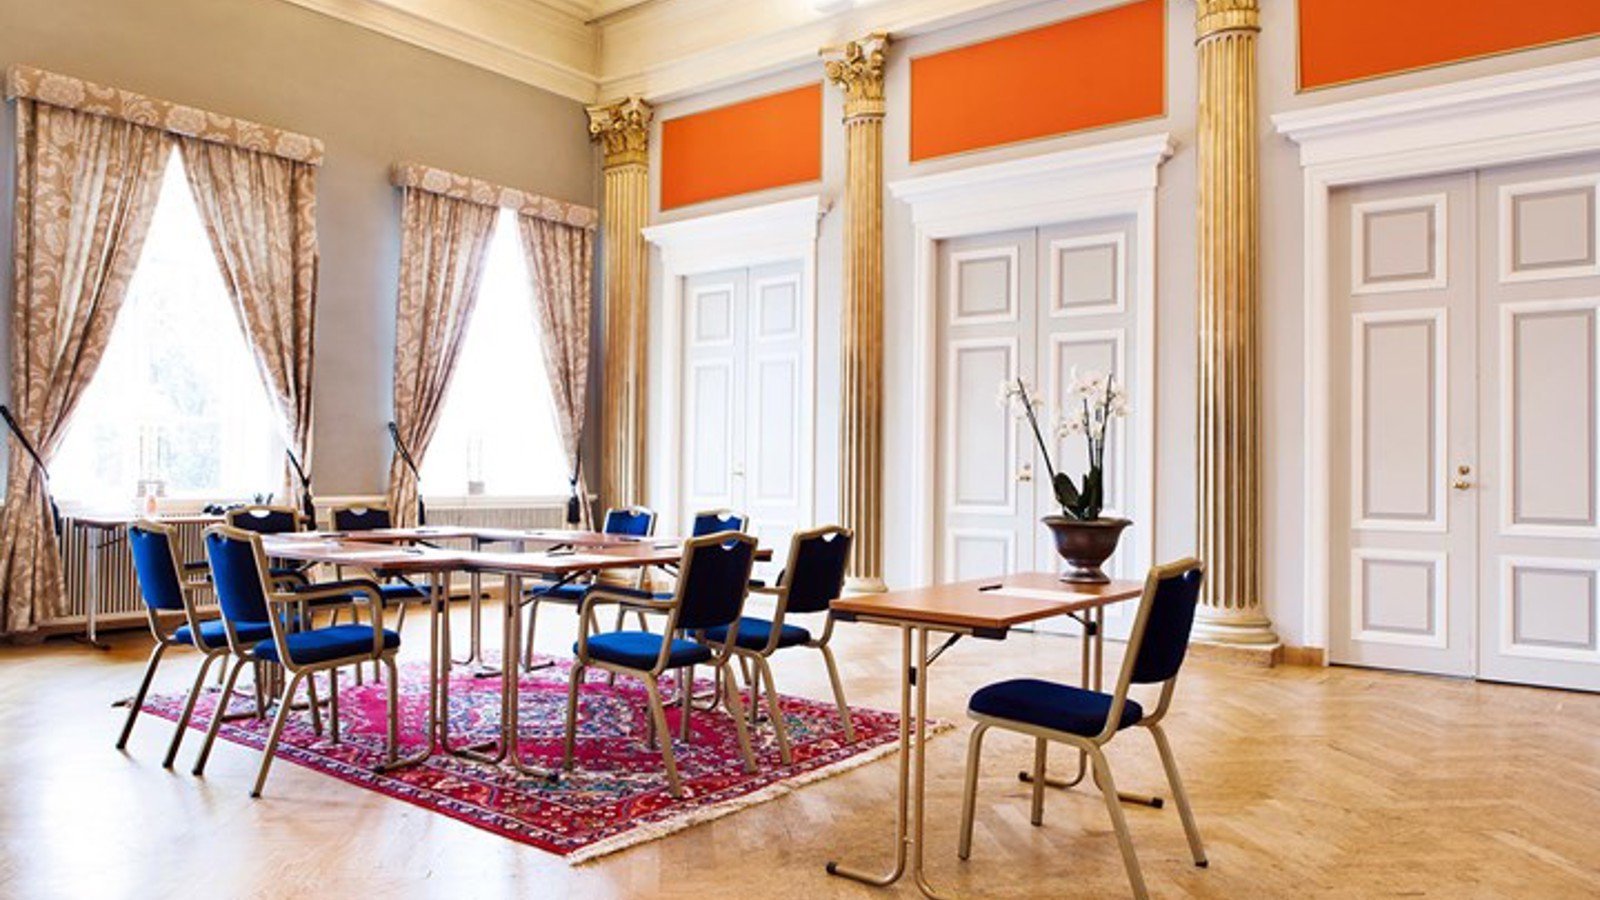 Konferensrum med högt till tak, guldpelare, stora fönster och blå stolar